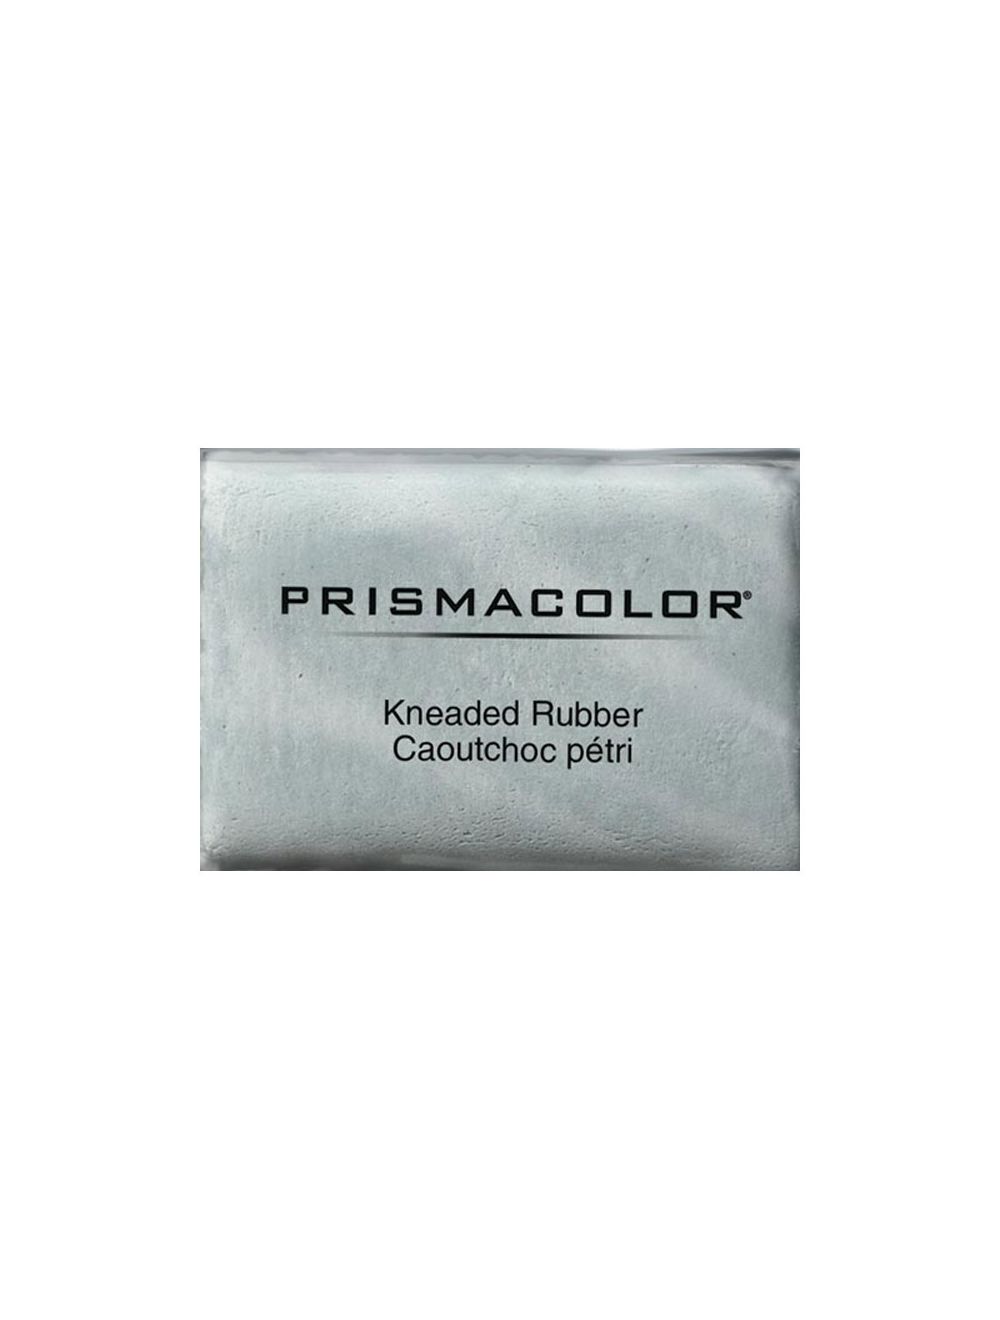 Prismacolor Kneaded Eraser Large